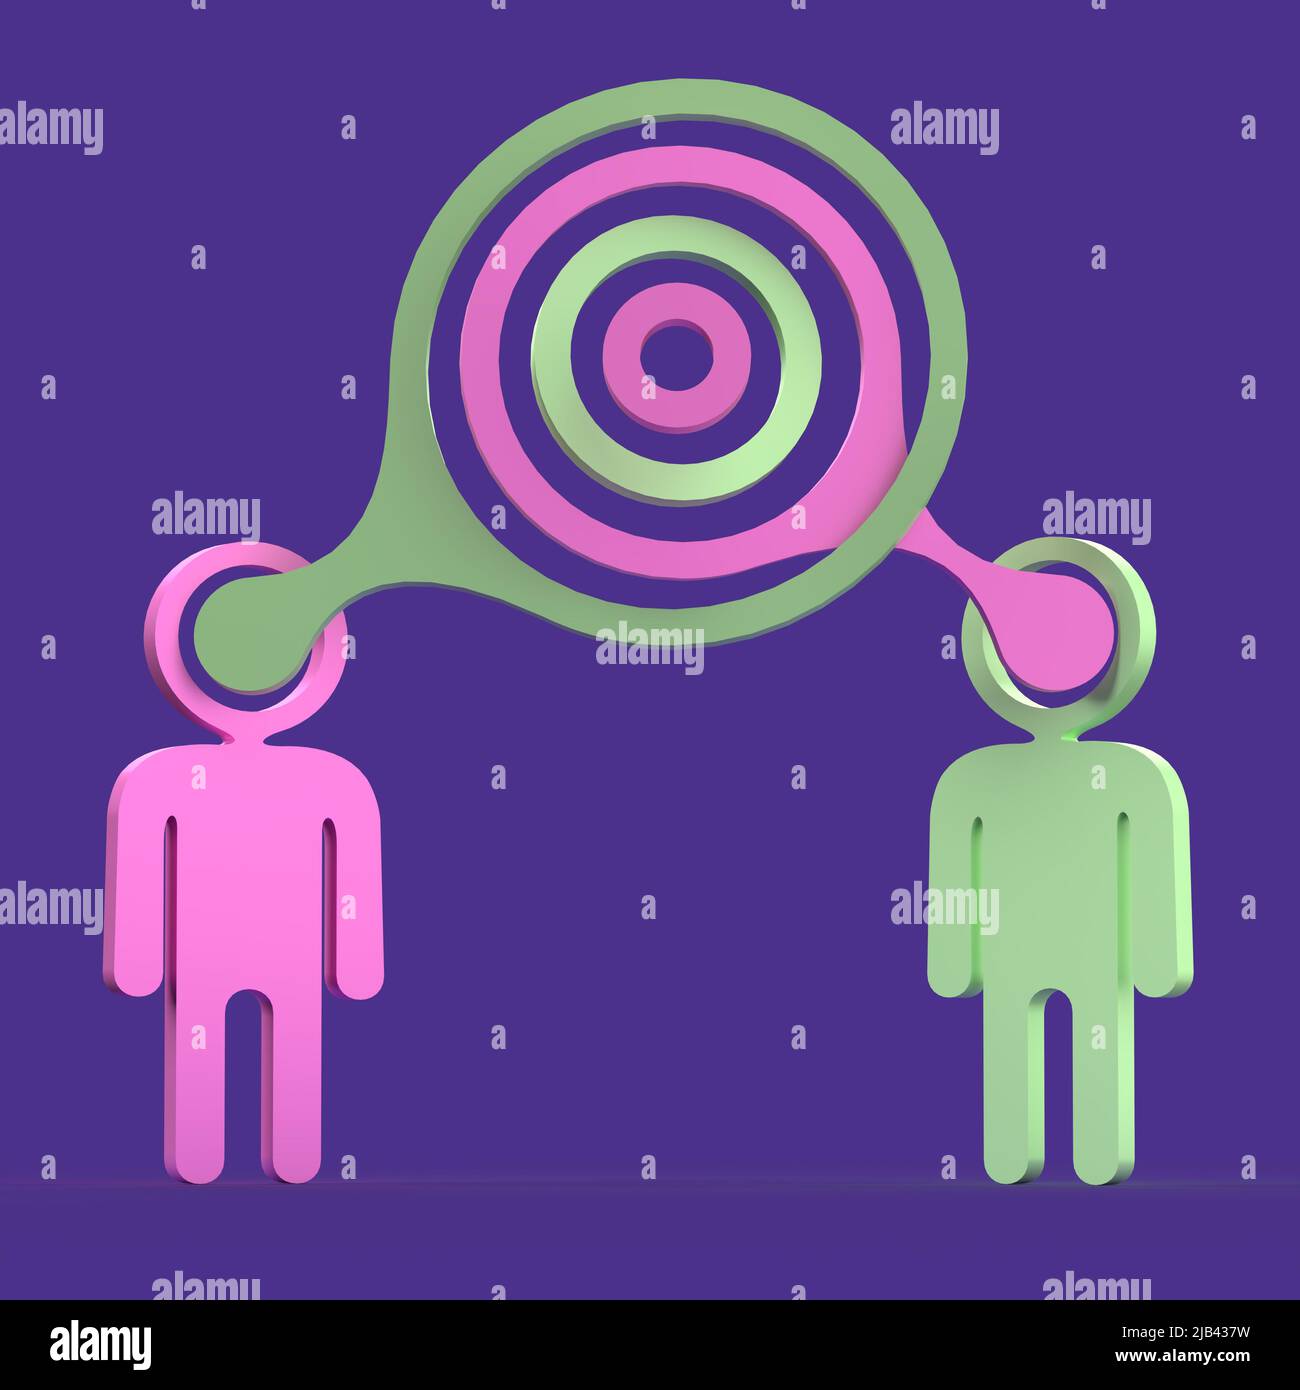 Échange de conversation entre deux personnes - illustration du dialogue en 3D Banque D'Images